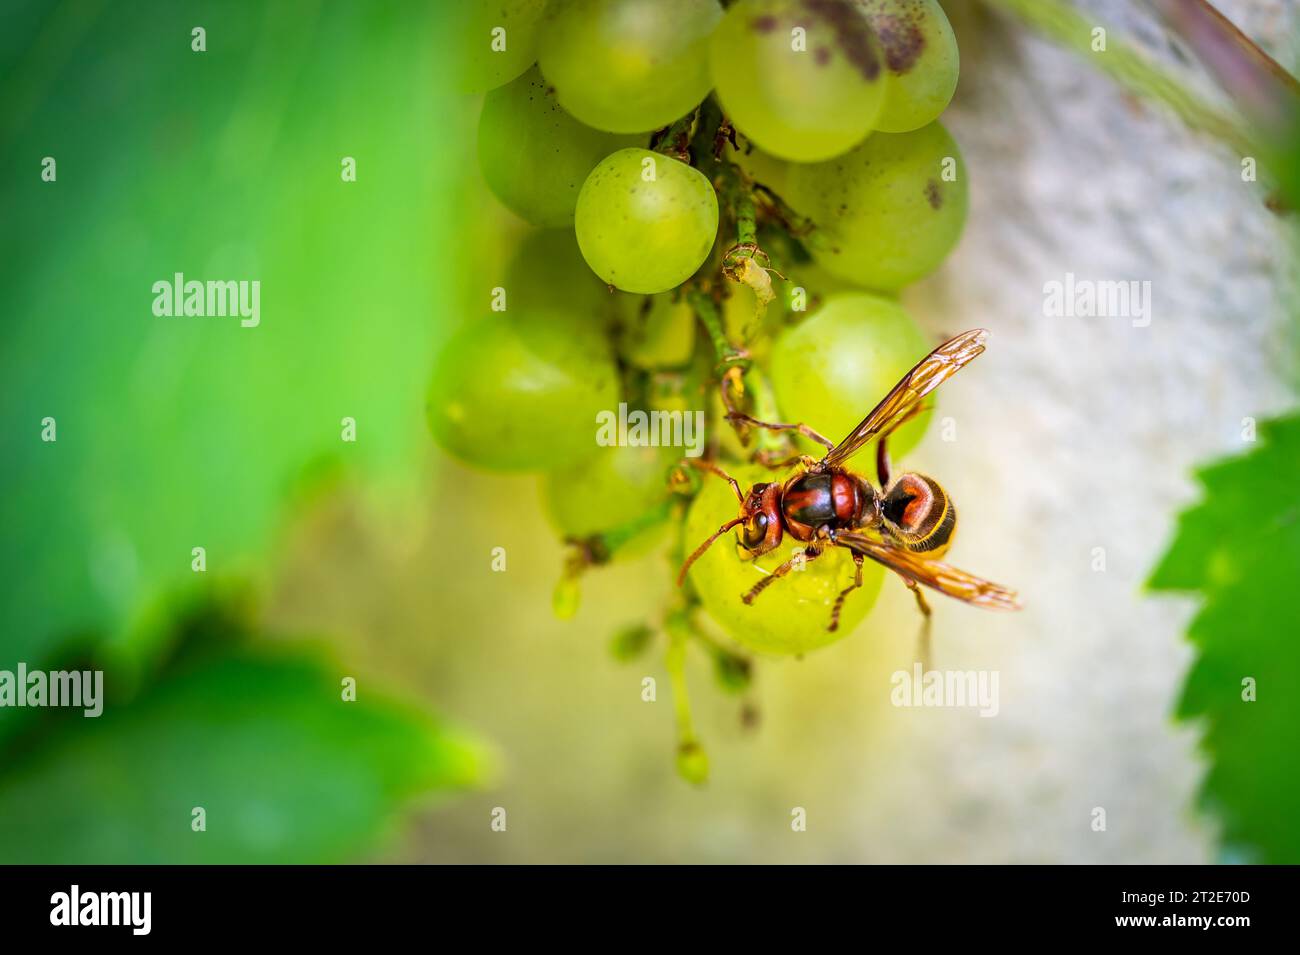 Il calabrone giallo (nome latino Vespa Crabro) sta mangiando frutta d'uva in vigna. Vista macro ravvicinata dell'insetto. Foto Stock